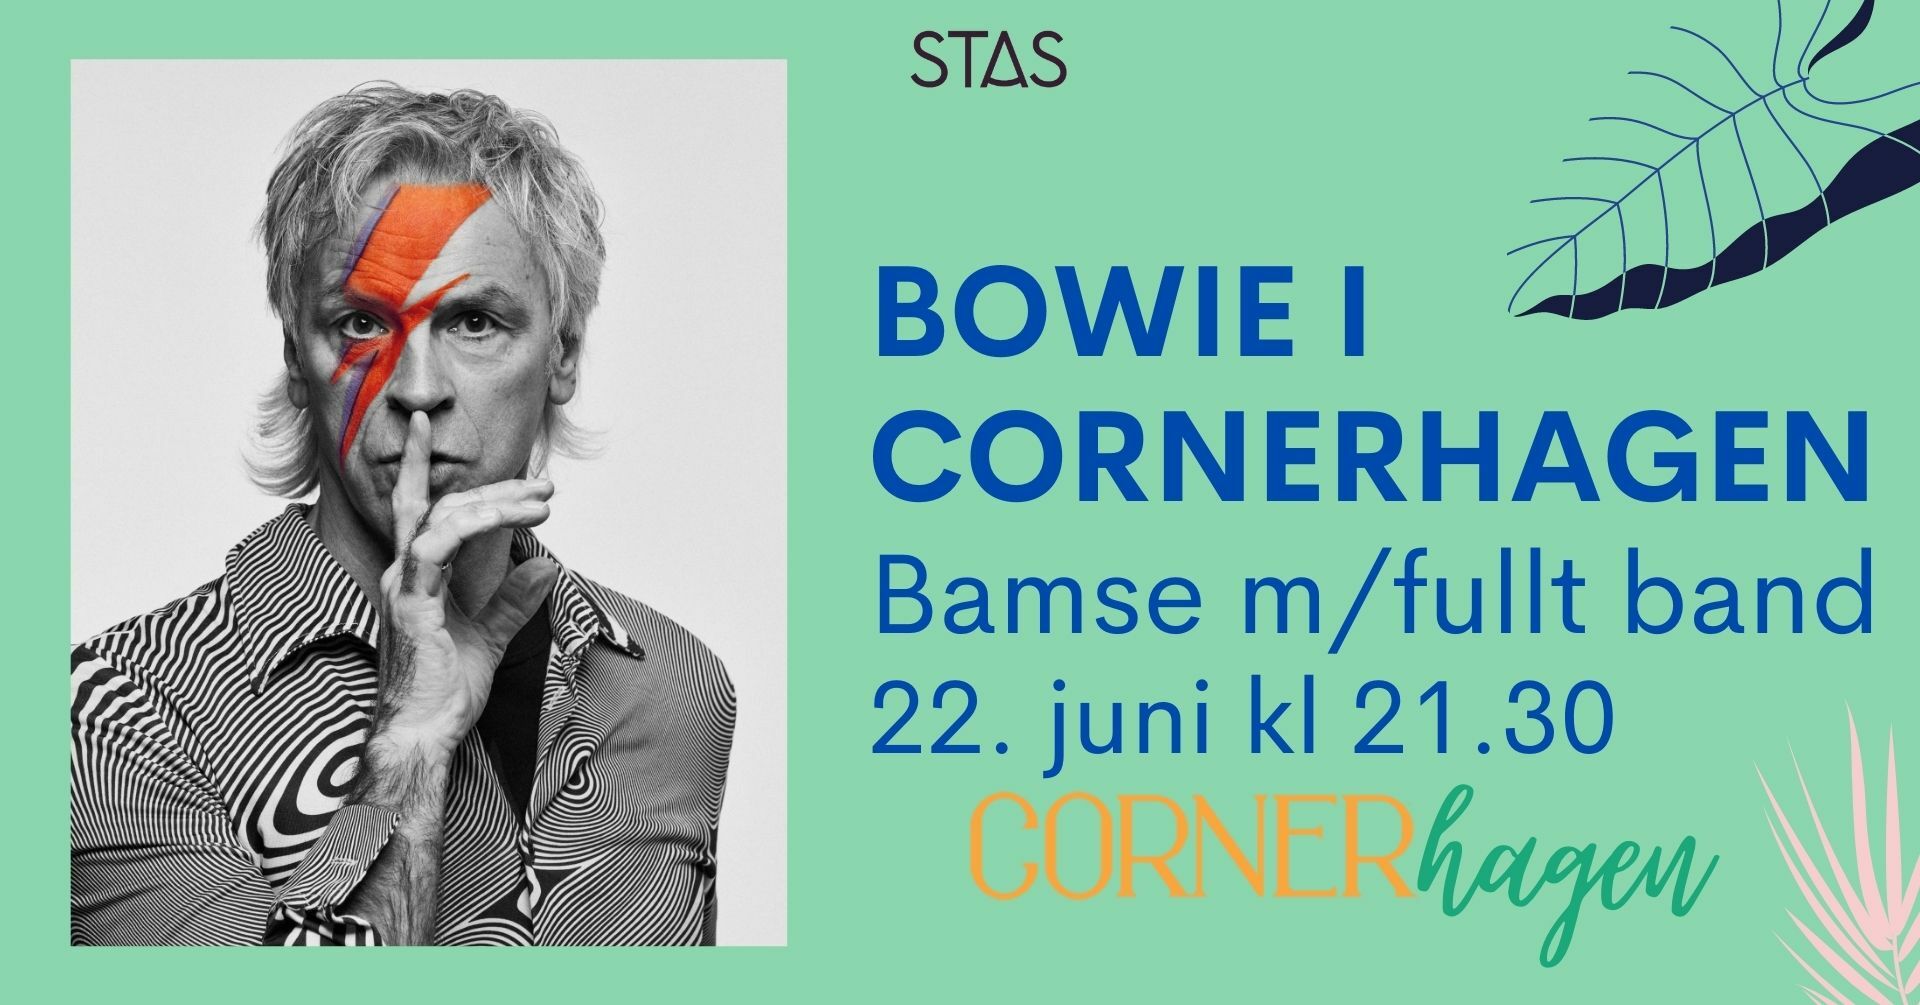 Bowie i Cornerhagen  - Stas Artist 